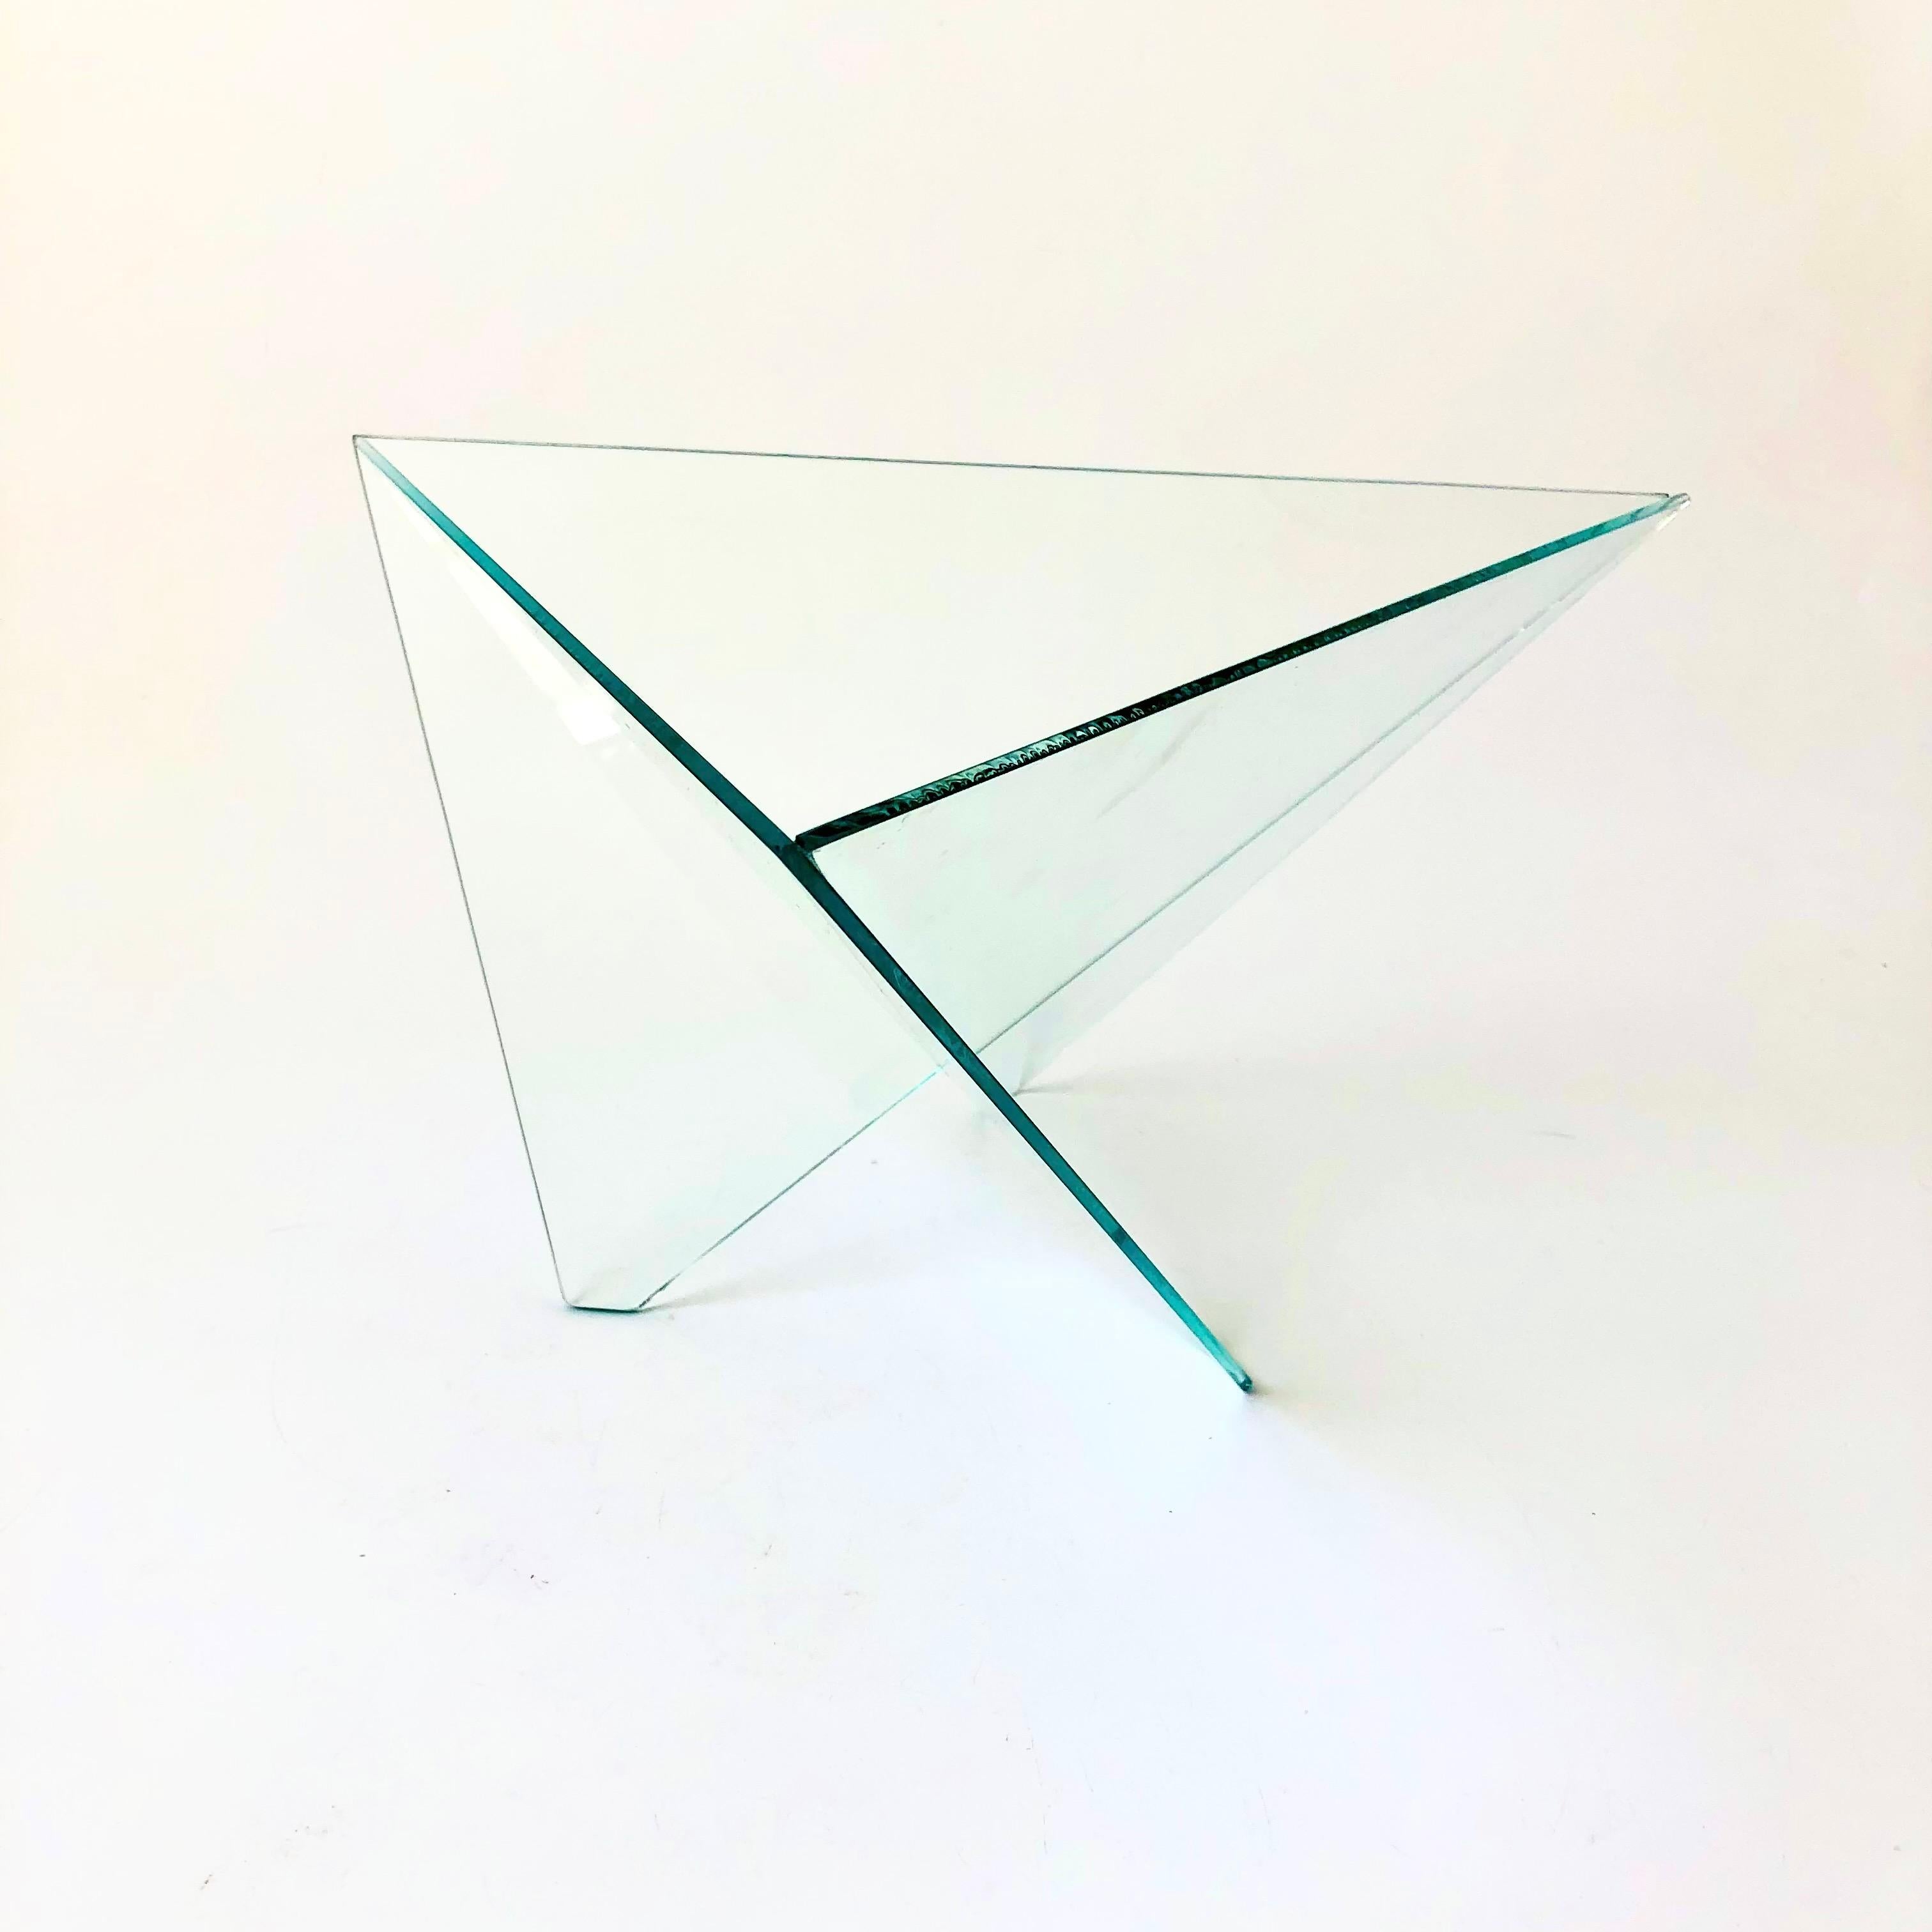 Eine postmoderne Glasschale im Vintage-Stil, geschaffen von Side Three Studio im Jahr 1988. Eine großartige skulpturale Dreiecksform entsteht durch 3 gewinkelte Glasscheiben, die miteinander verschmolzen wurden. Großes Format, ideal für die